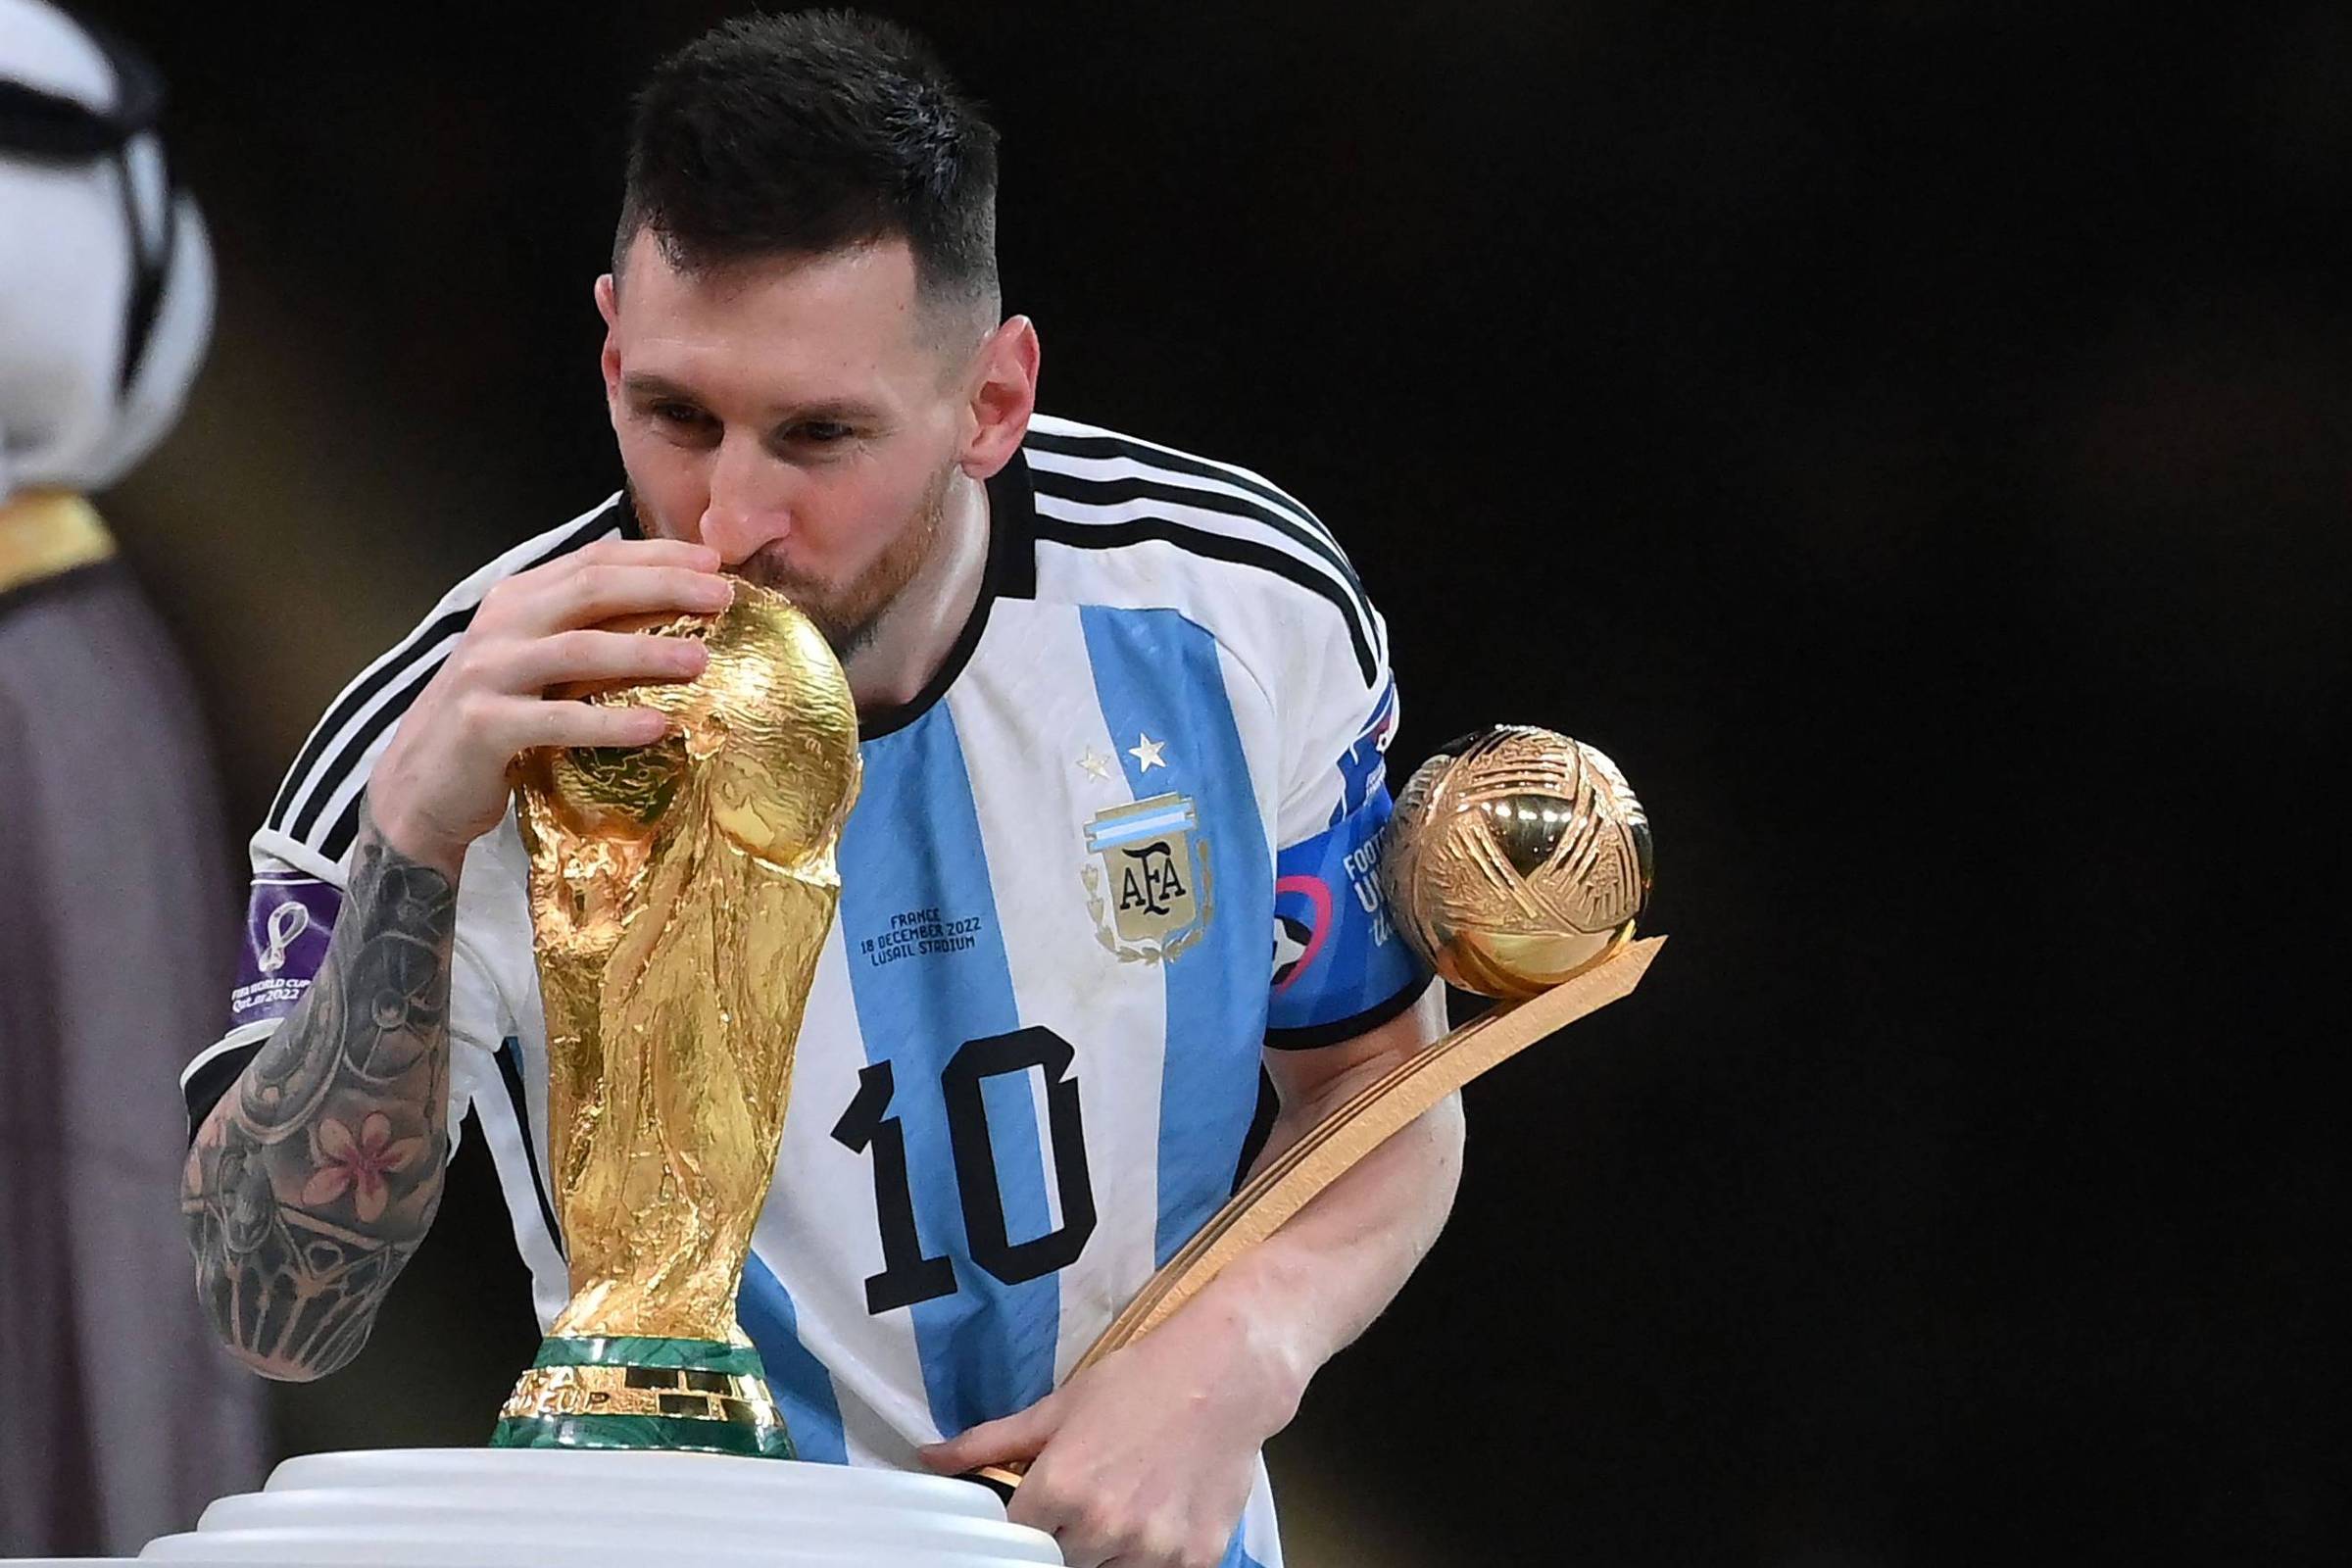 Mundial 2022. A Argentina é campeã do mundo. Veja o resumo da partida